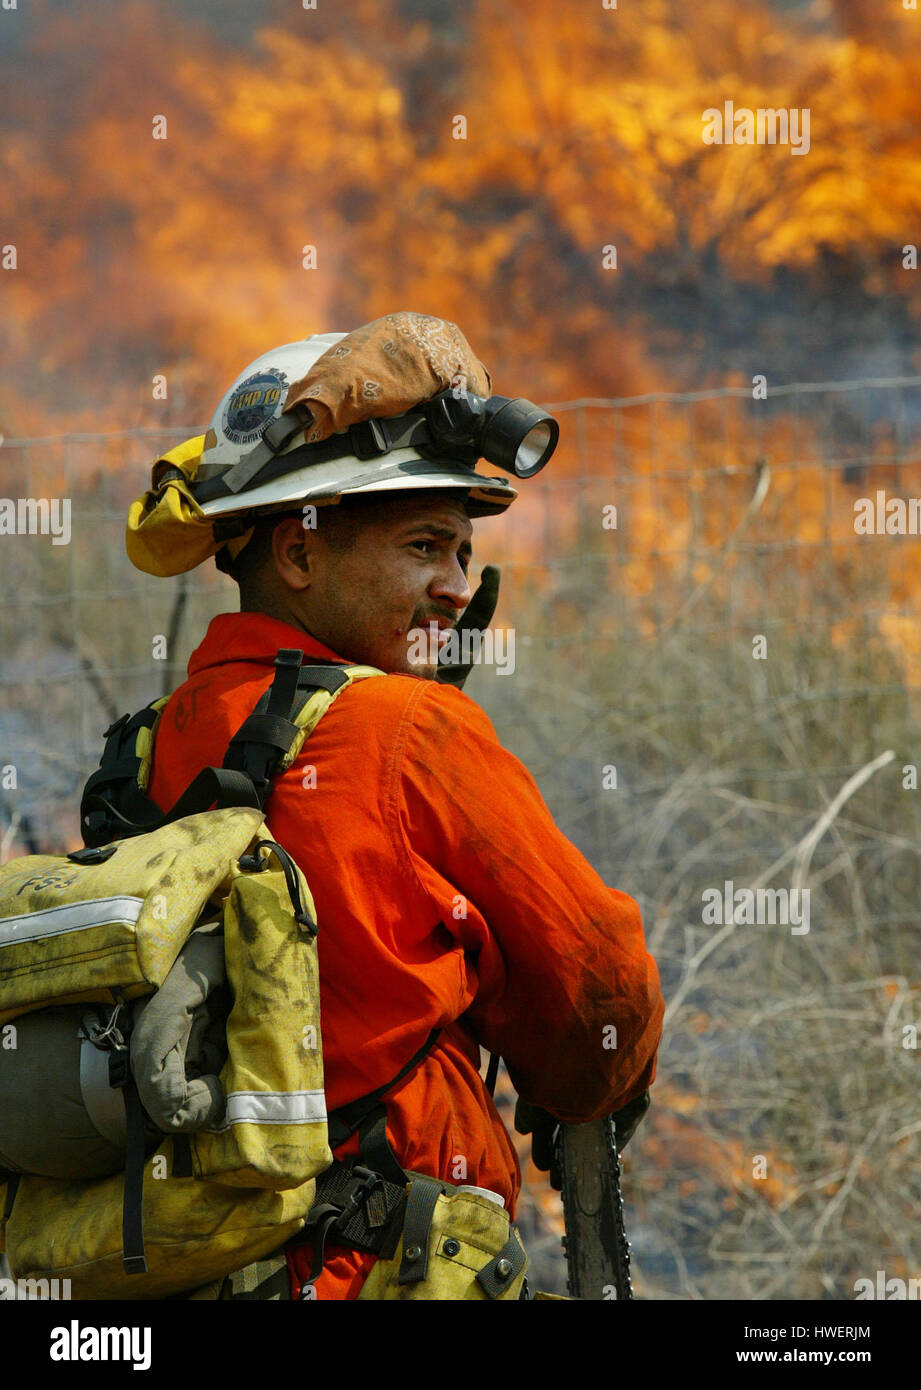 Il pompiere Oscar Rodriguez di San Diego, si spegne dal calore di un fuoco a spazzola a Temecula, California, il 4 maggio 2004. Il clima secco e caldo recente ha reso le aree della California meridionale vulnerabili agli incendi che hanno distrutto la foresta e alcuni edifici. Foto di Francis Specker Foto Stock